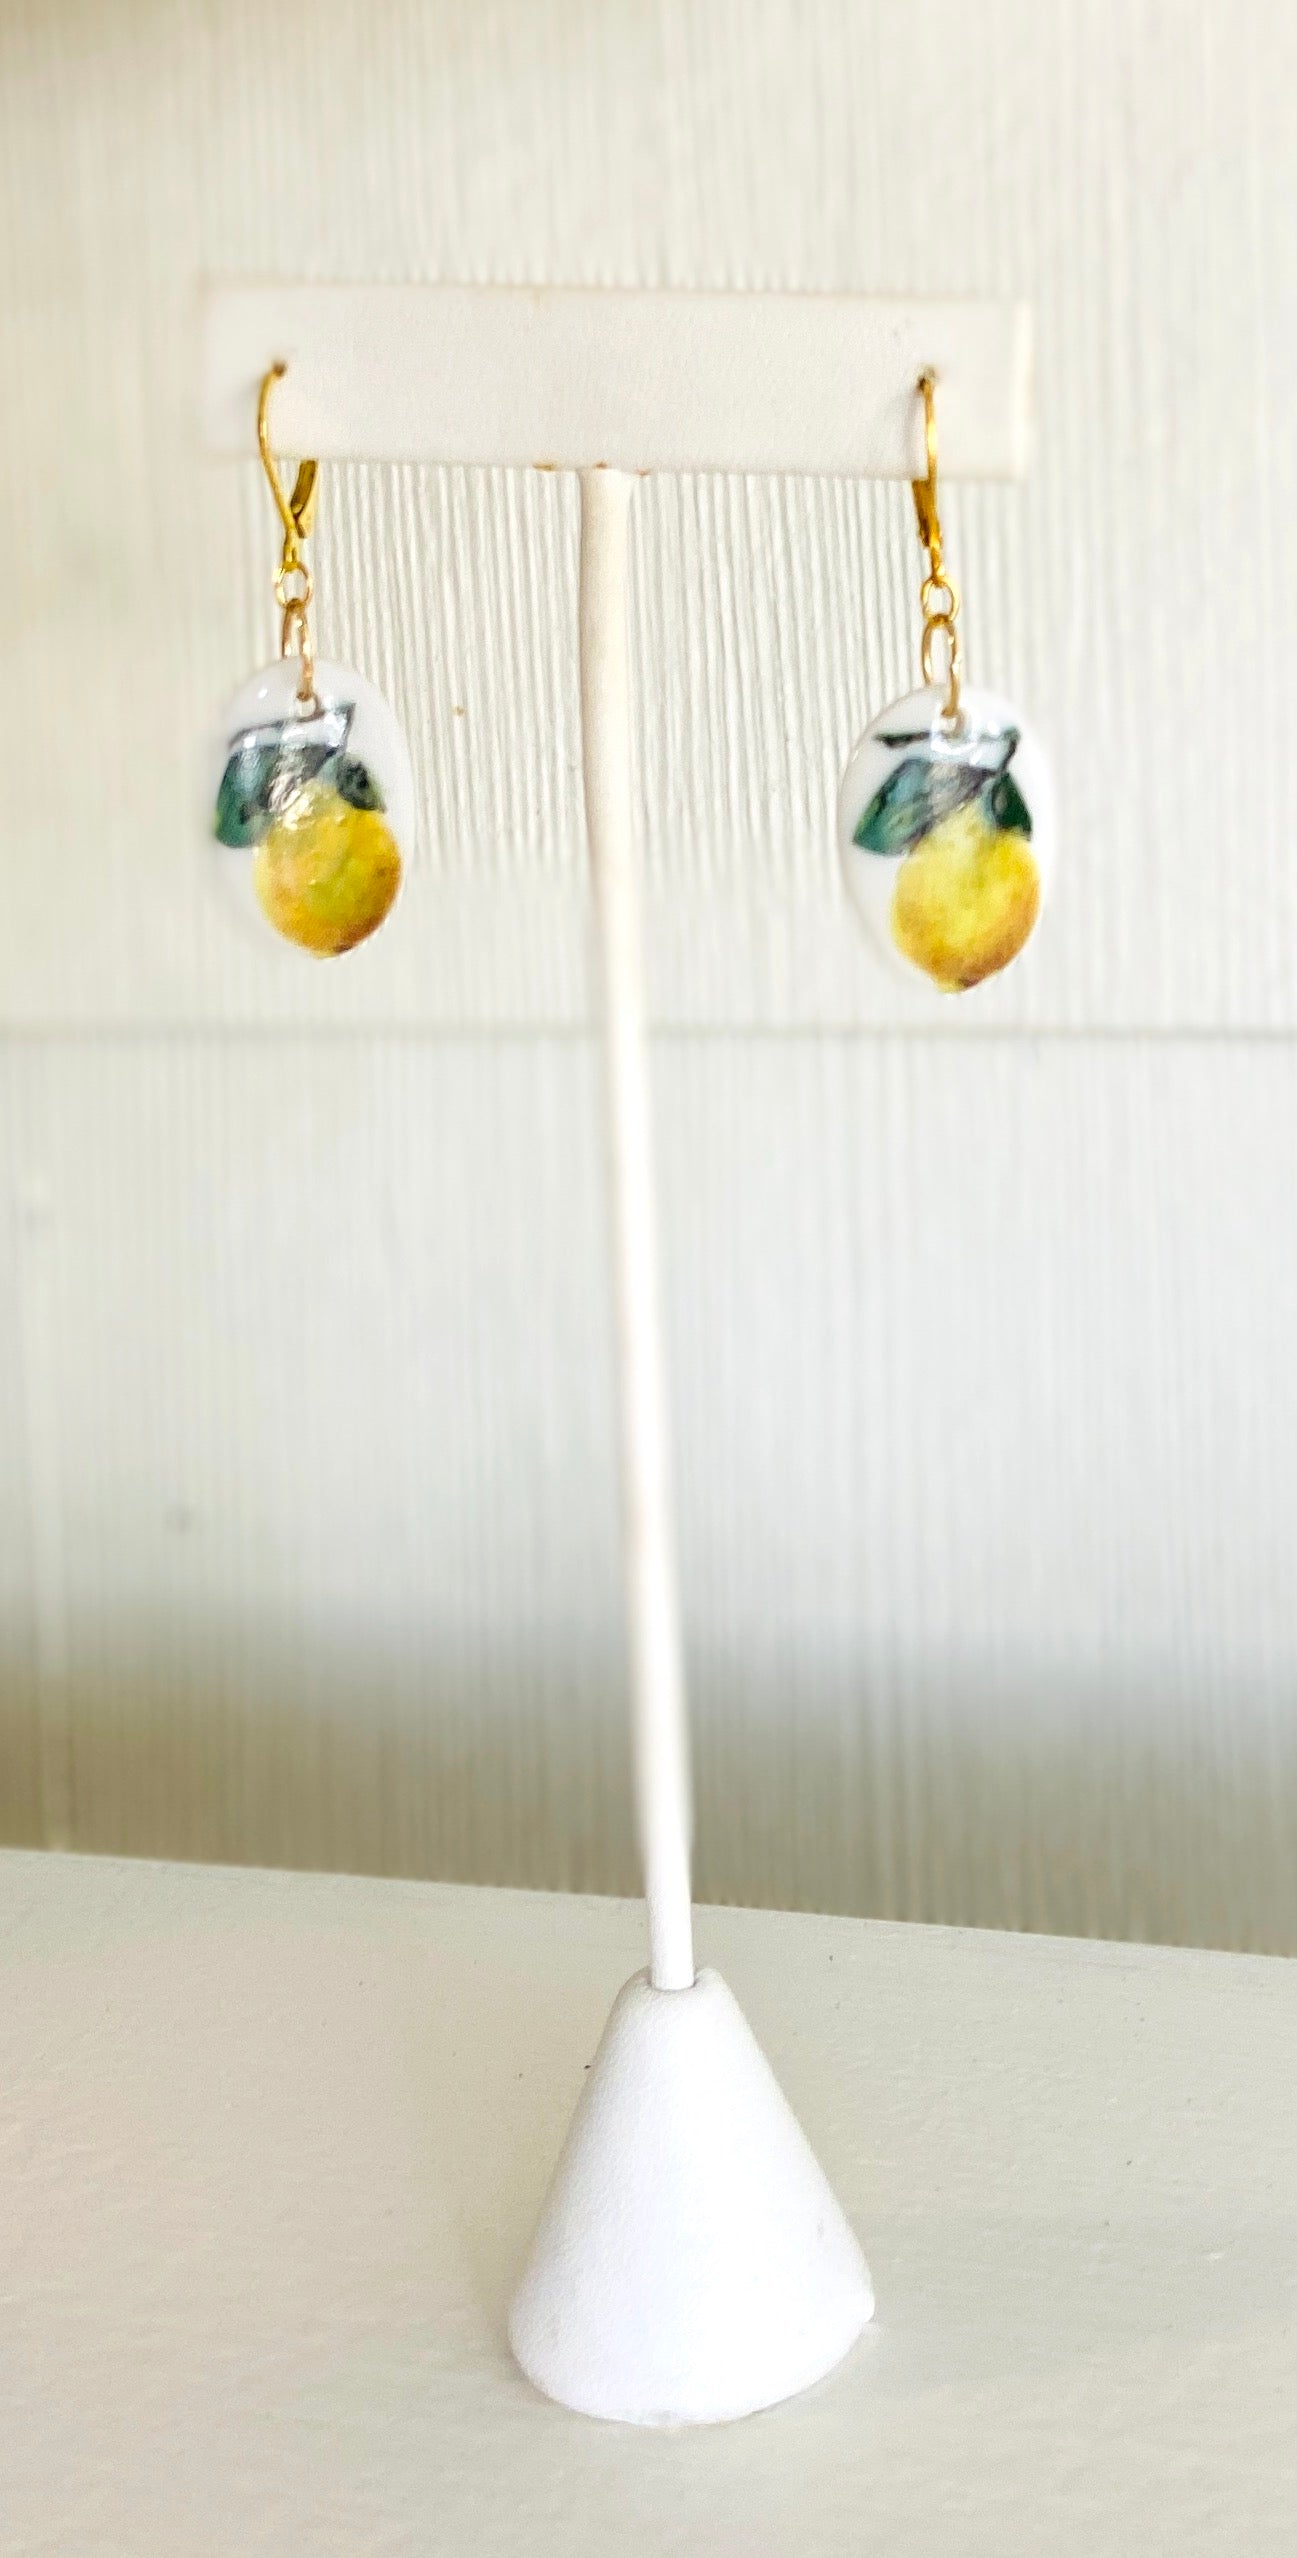 Lemon earrings dainty earrings fruit jewelry